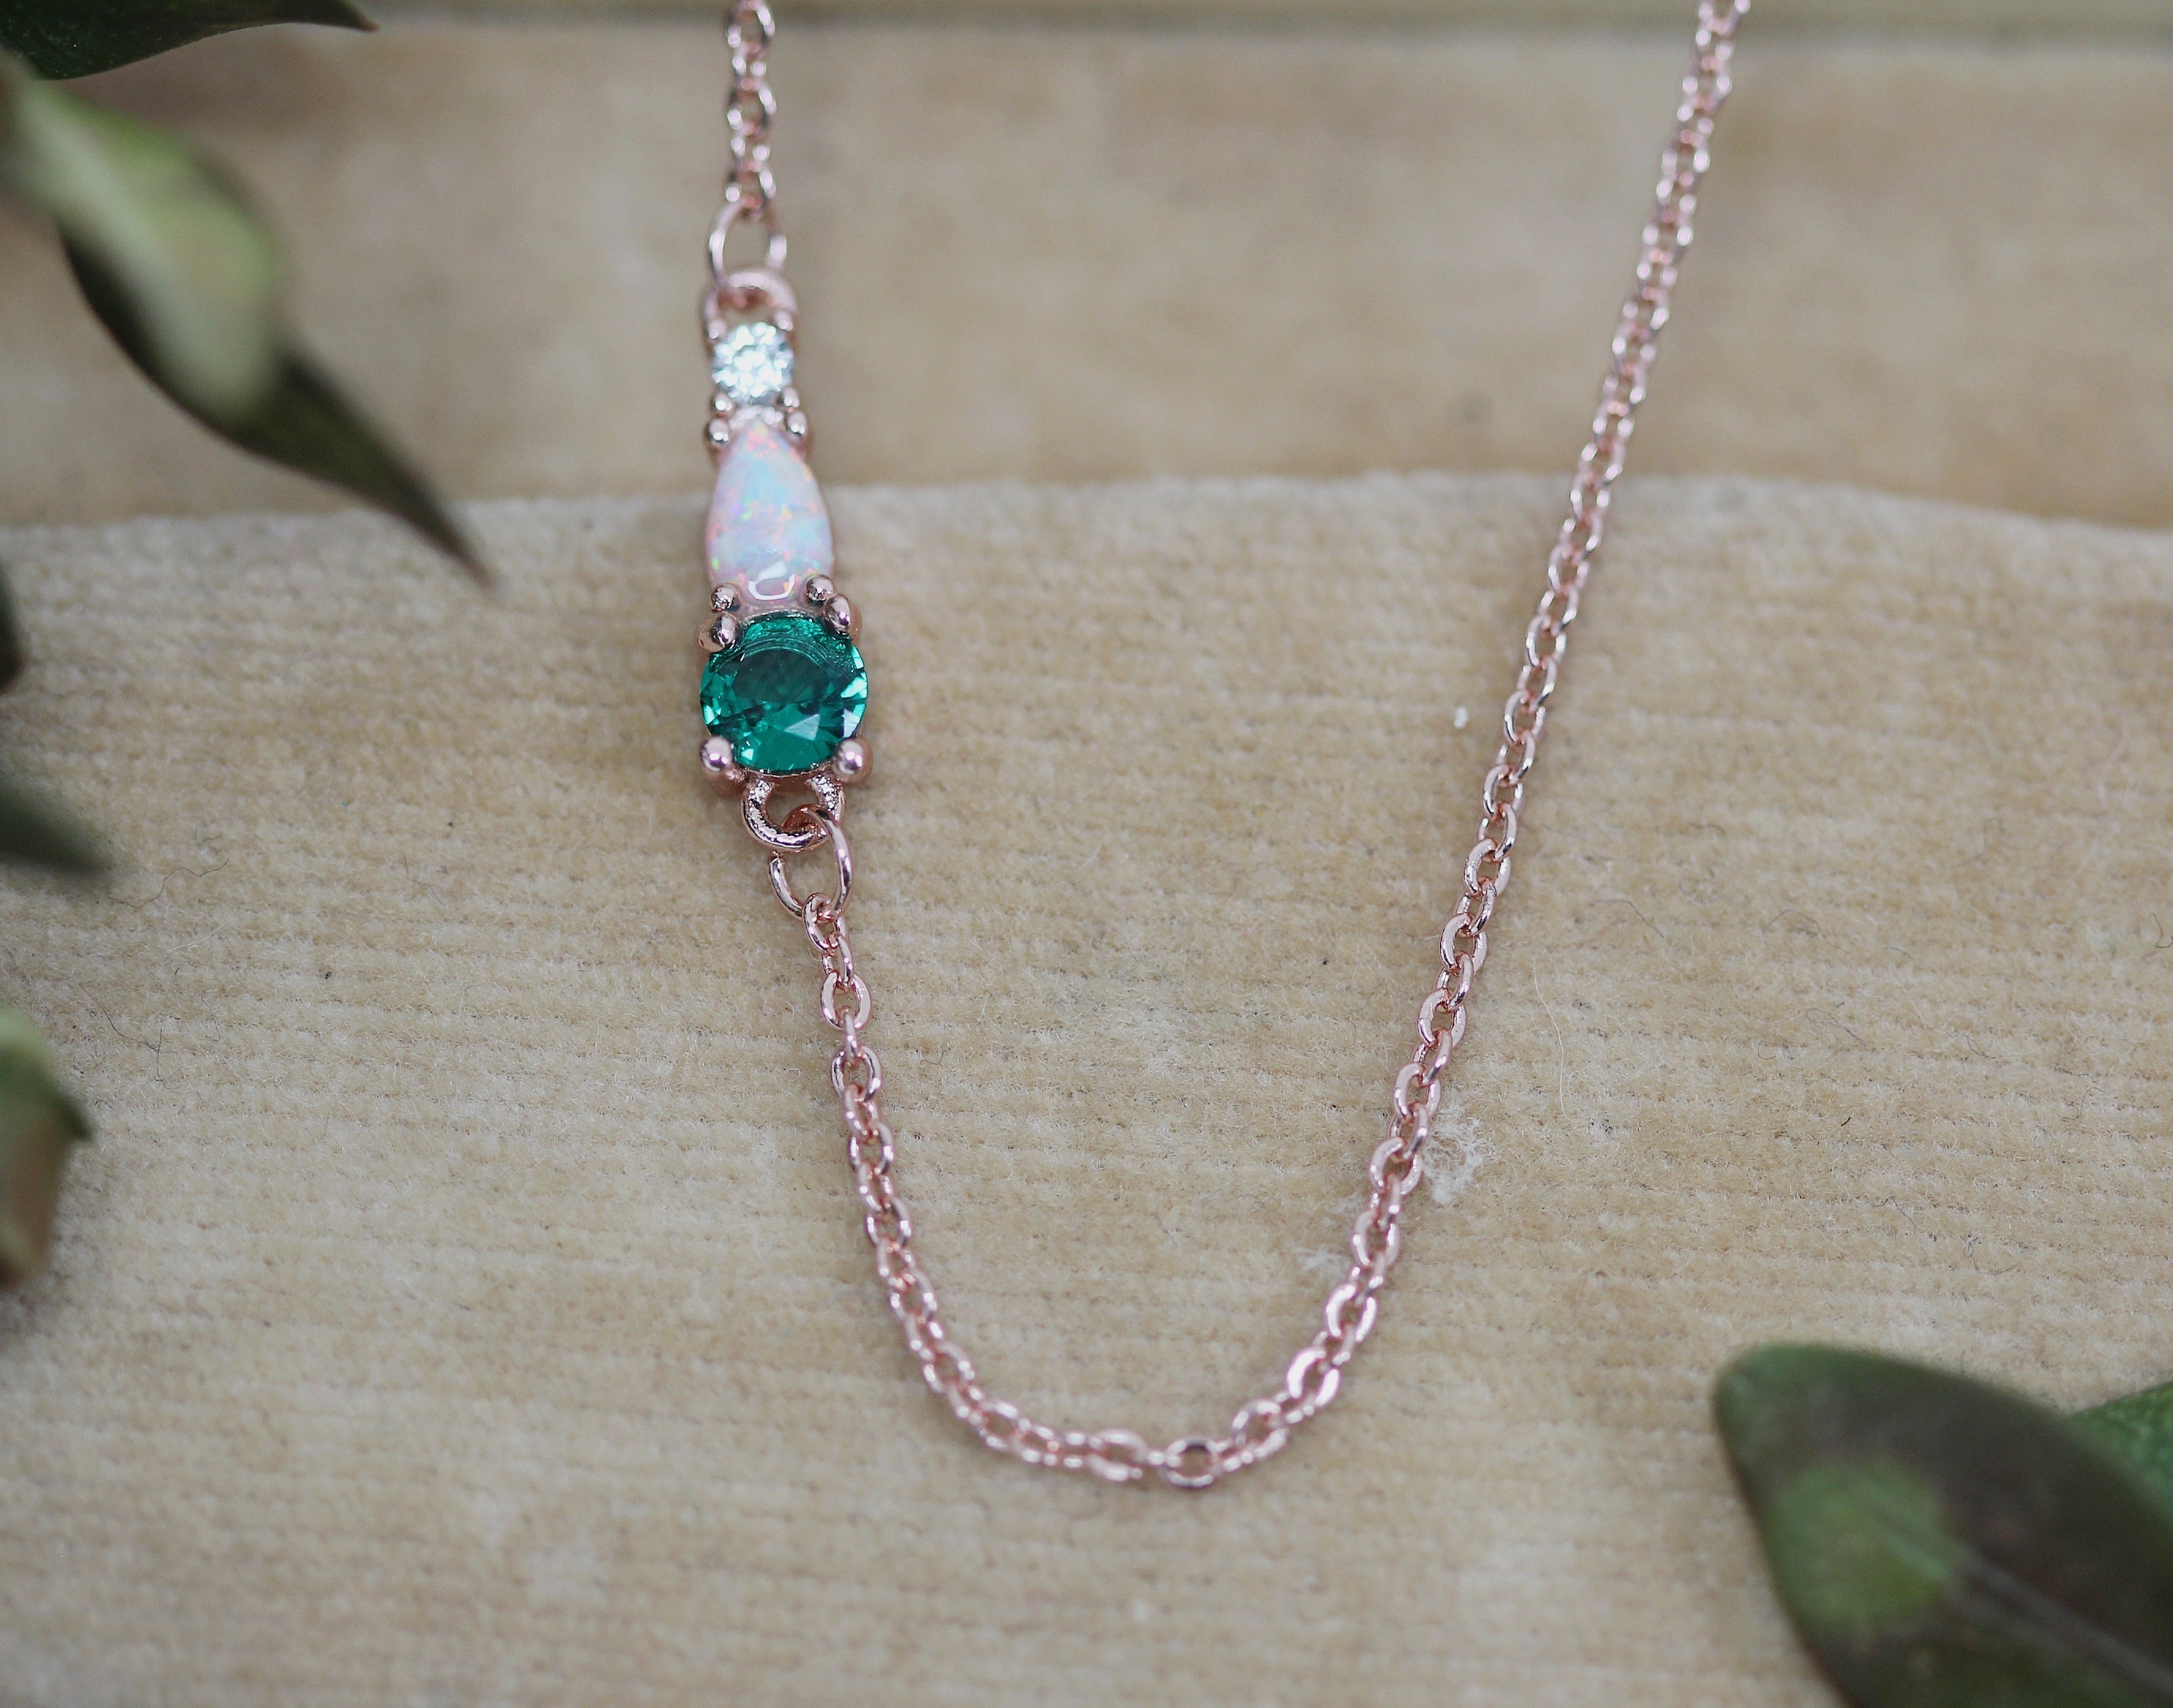 Green Opal Dreams Crystals Necklace